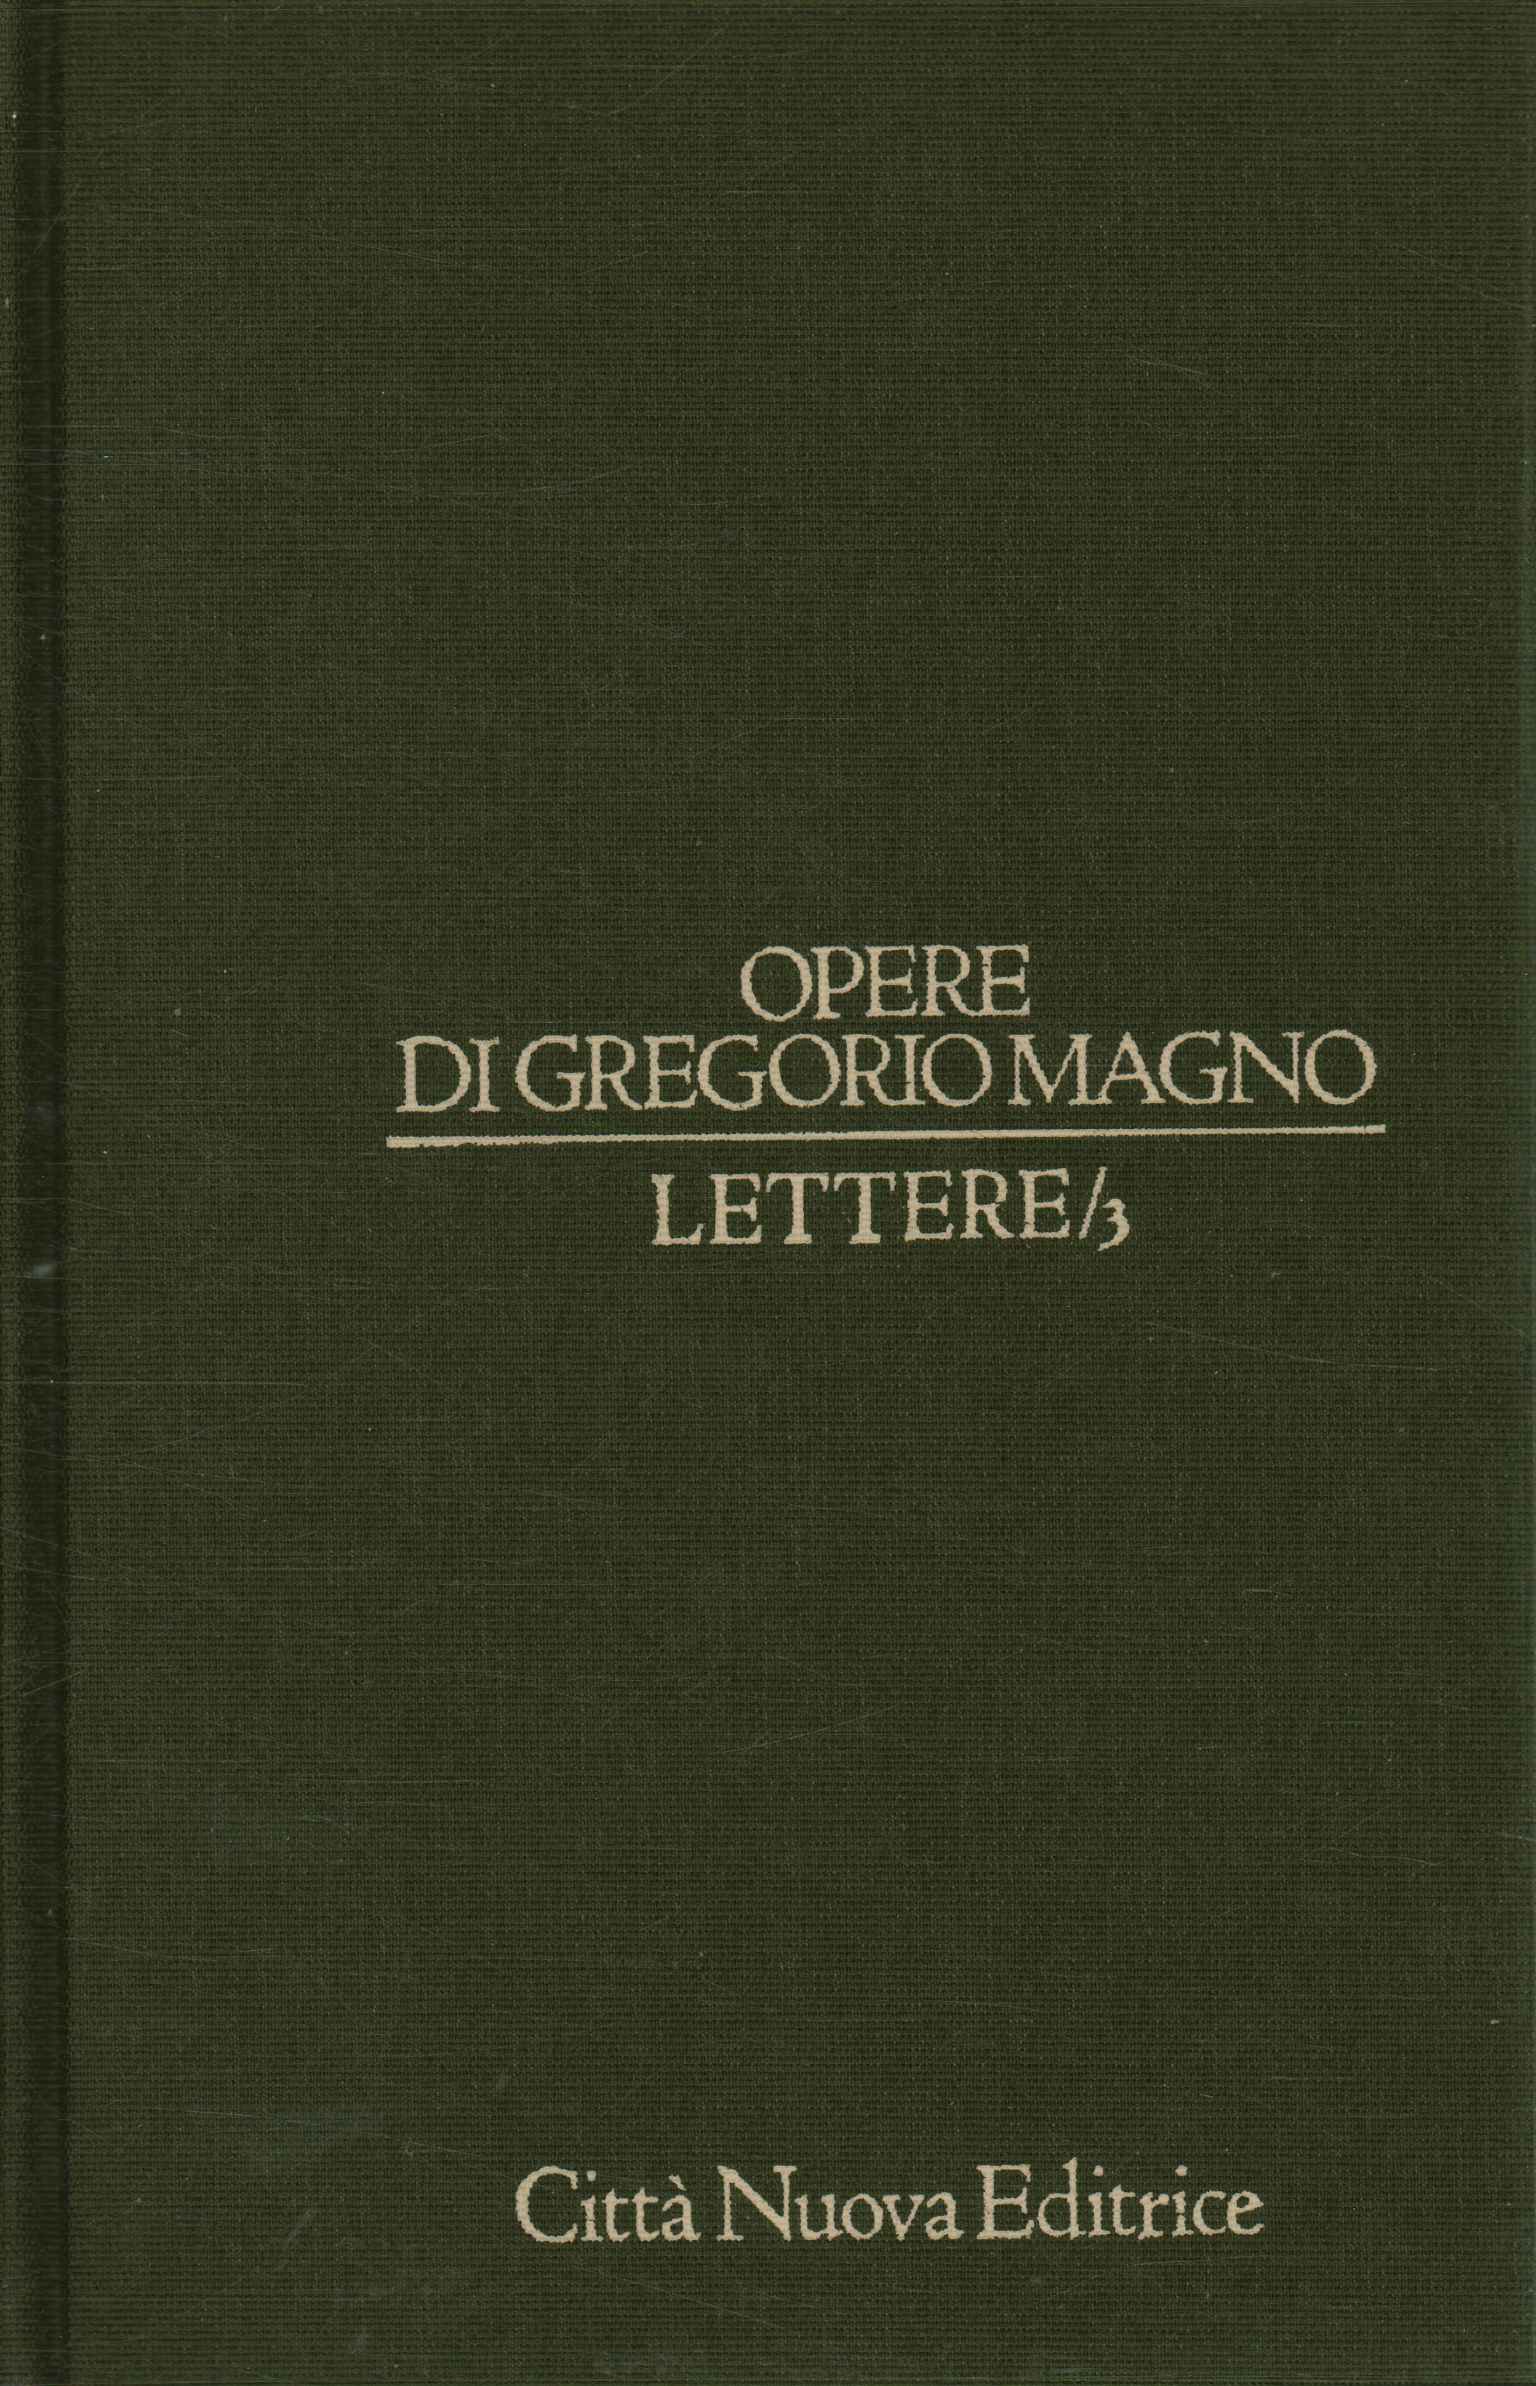 Obras de Gregorio Magno. Letras (Volumen